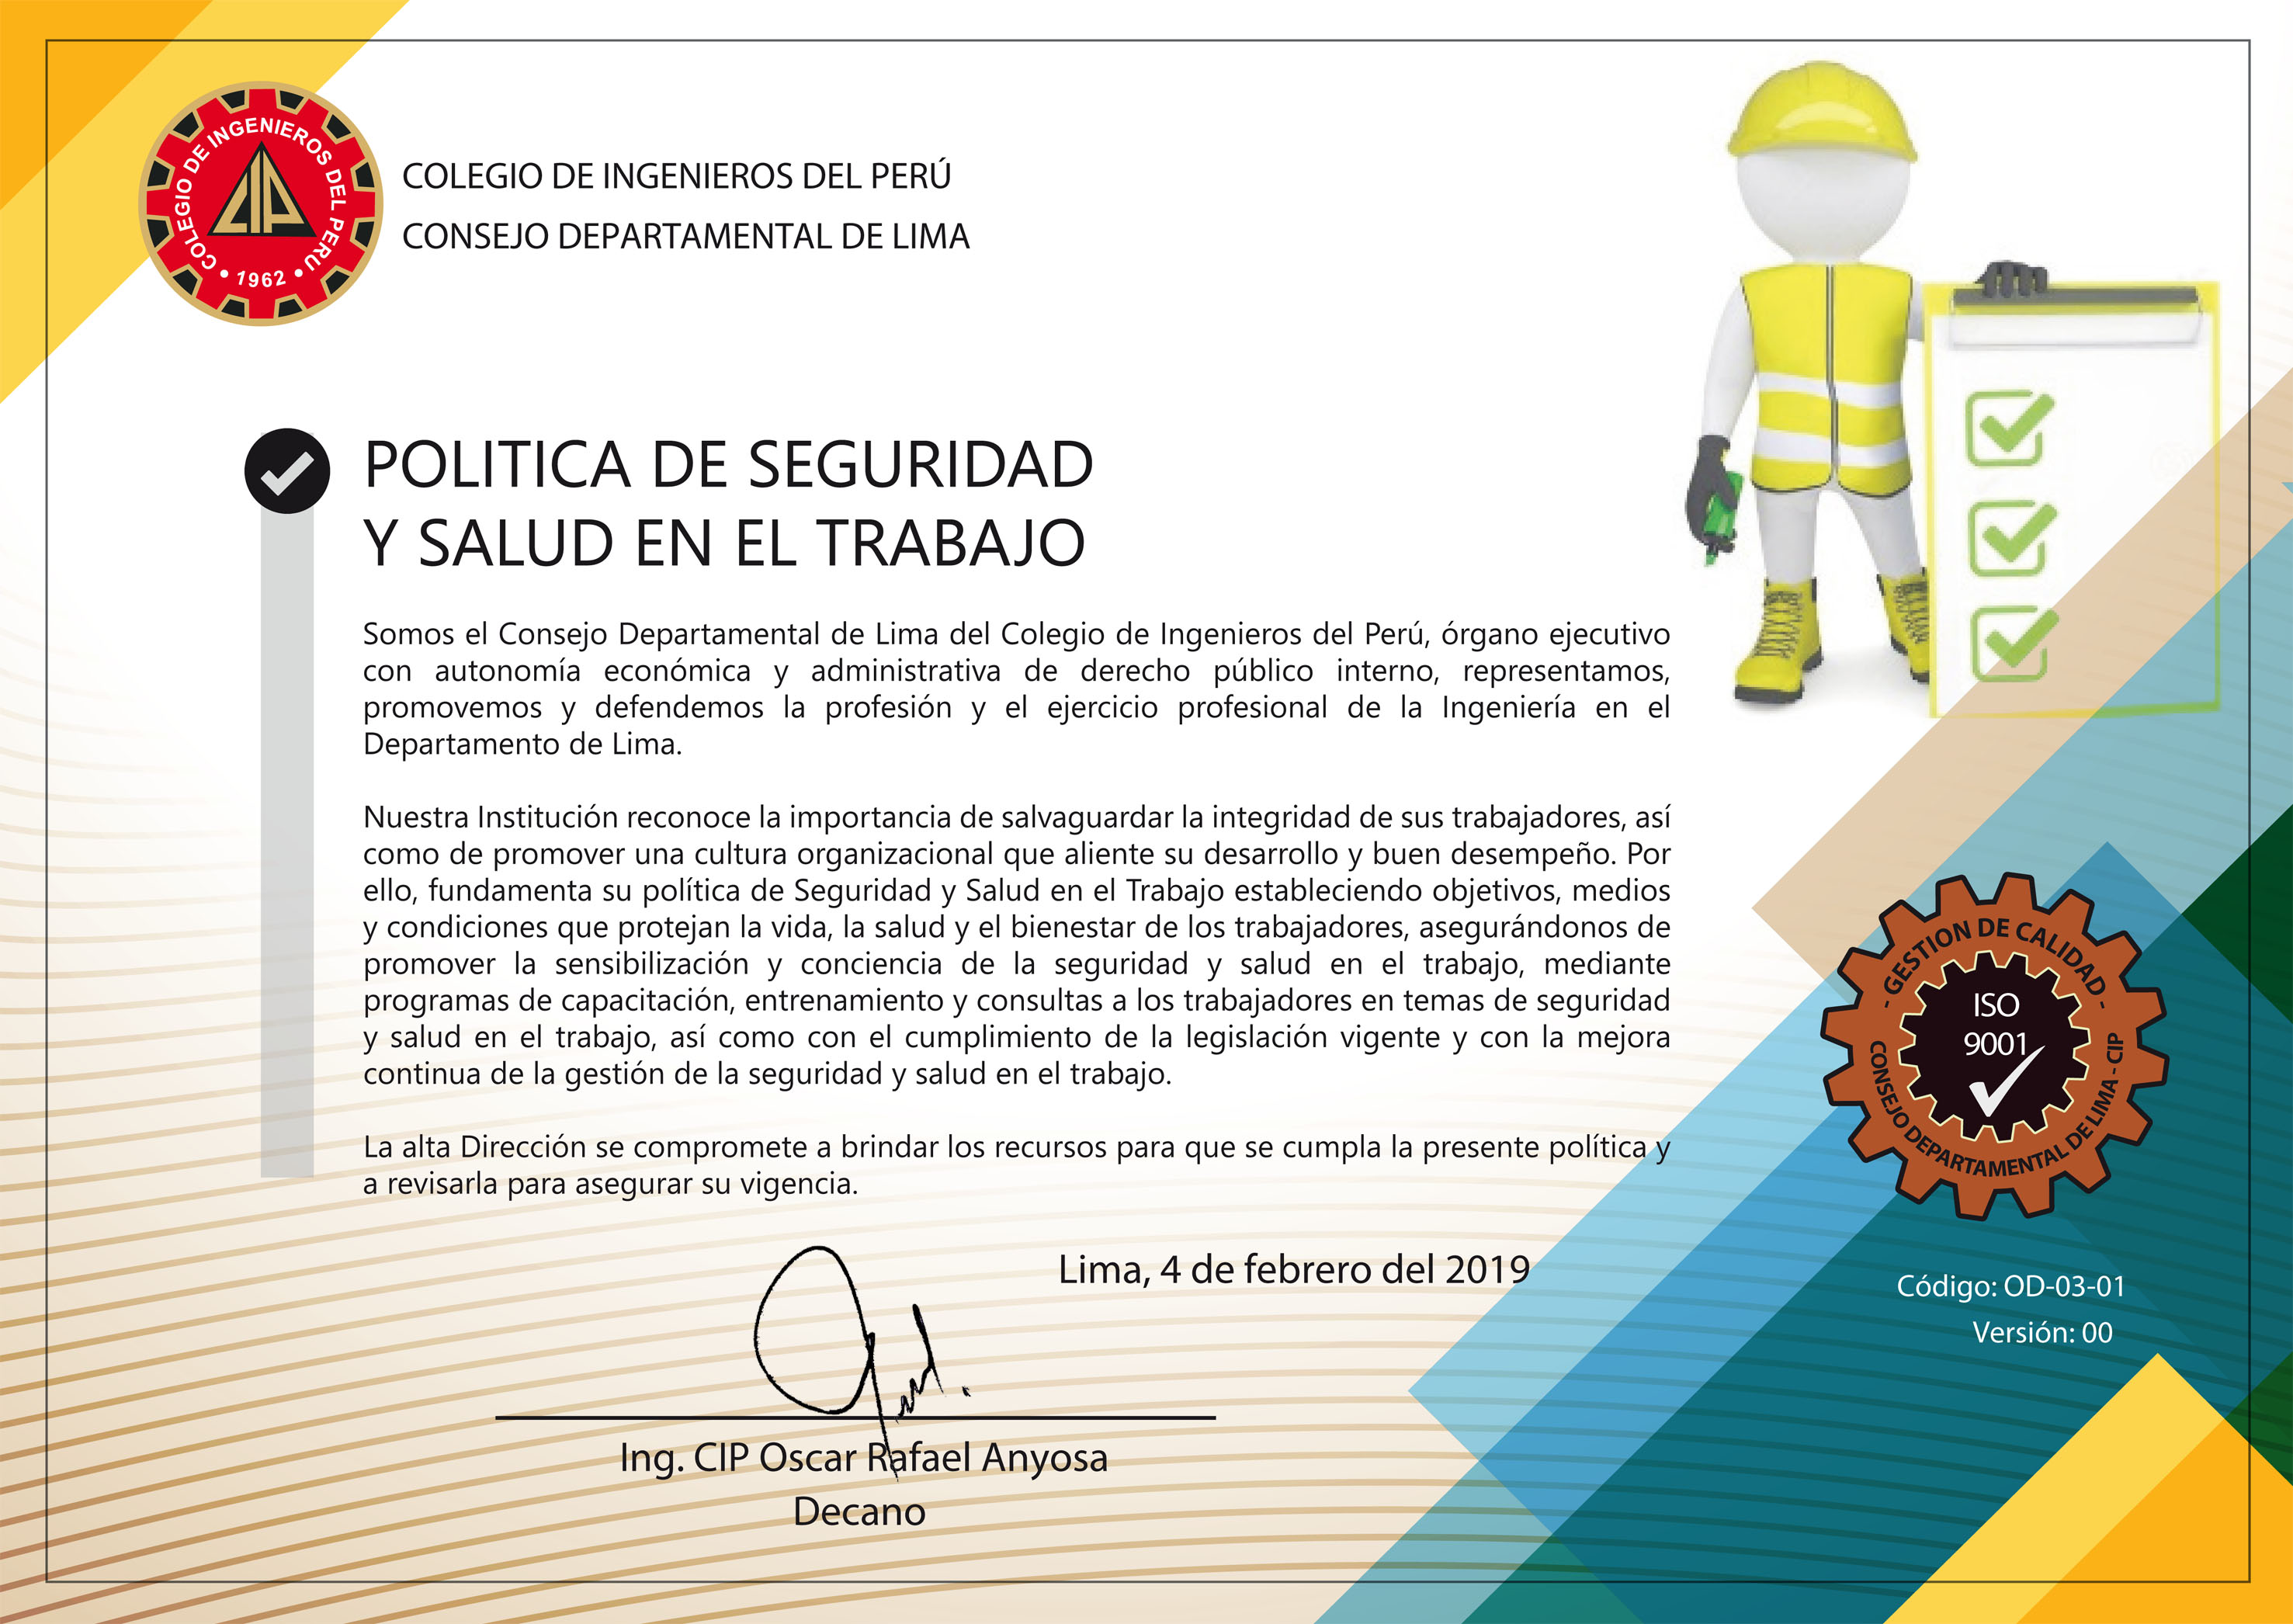 Pol Tica De Seguridad Y Salud En El Trabajo Consejo Departamental De Lima